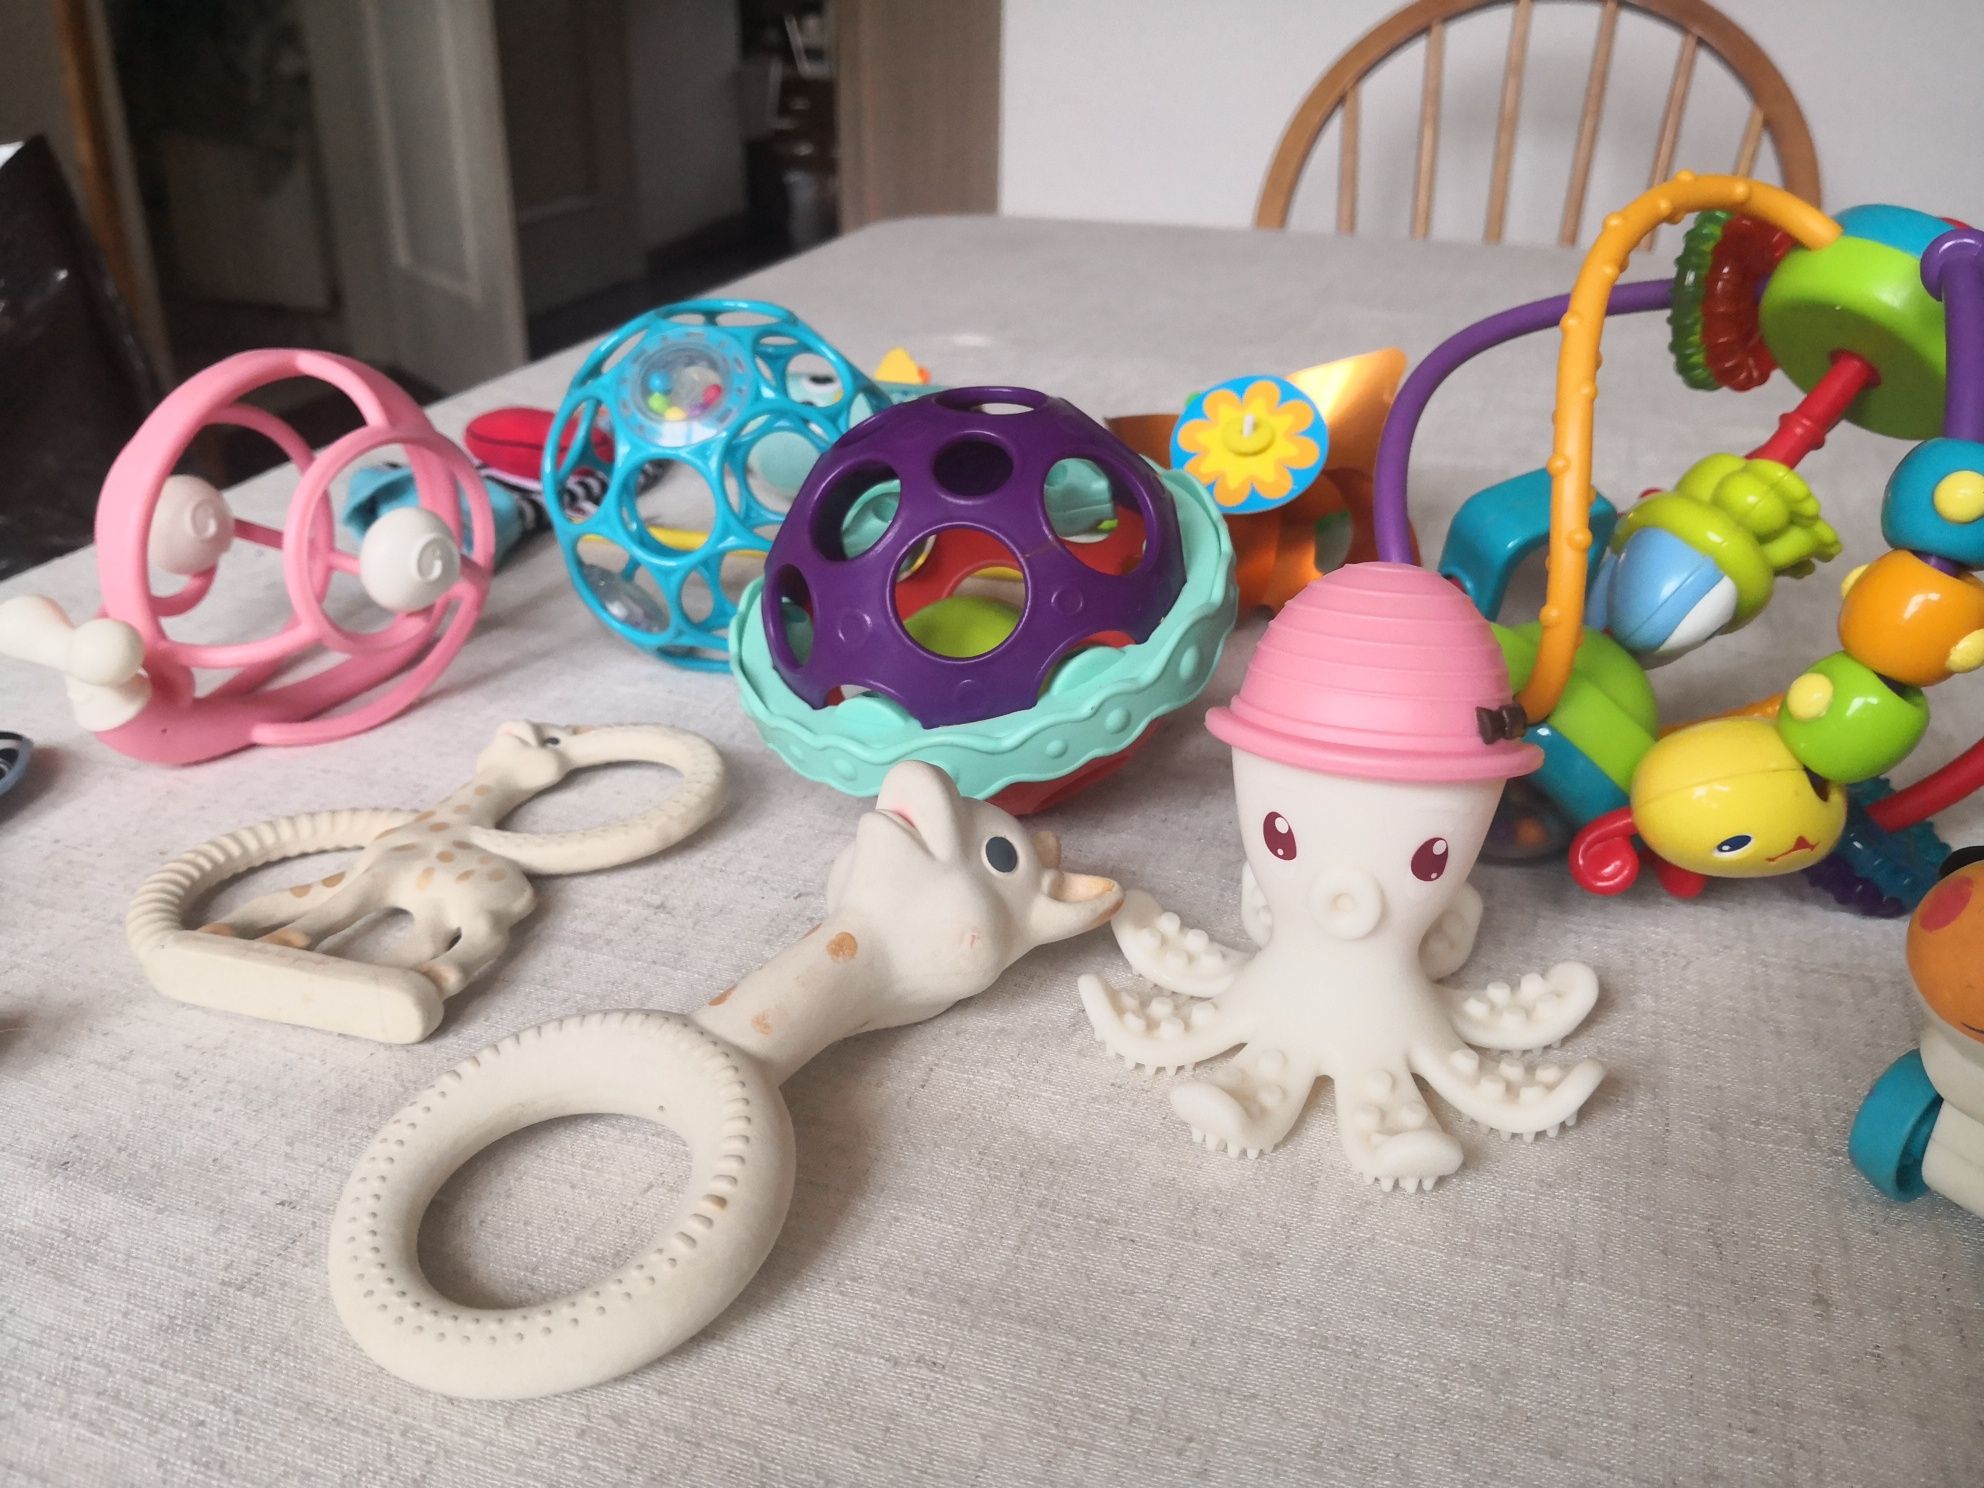 Zabawki duży zestaw zabawek 6-18 miesięcy, na roczek